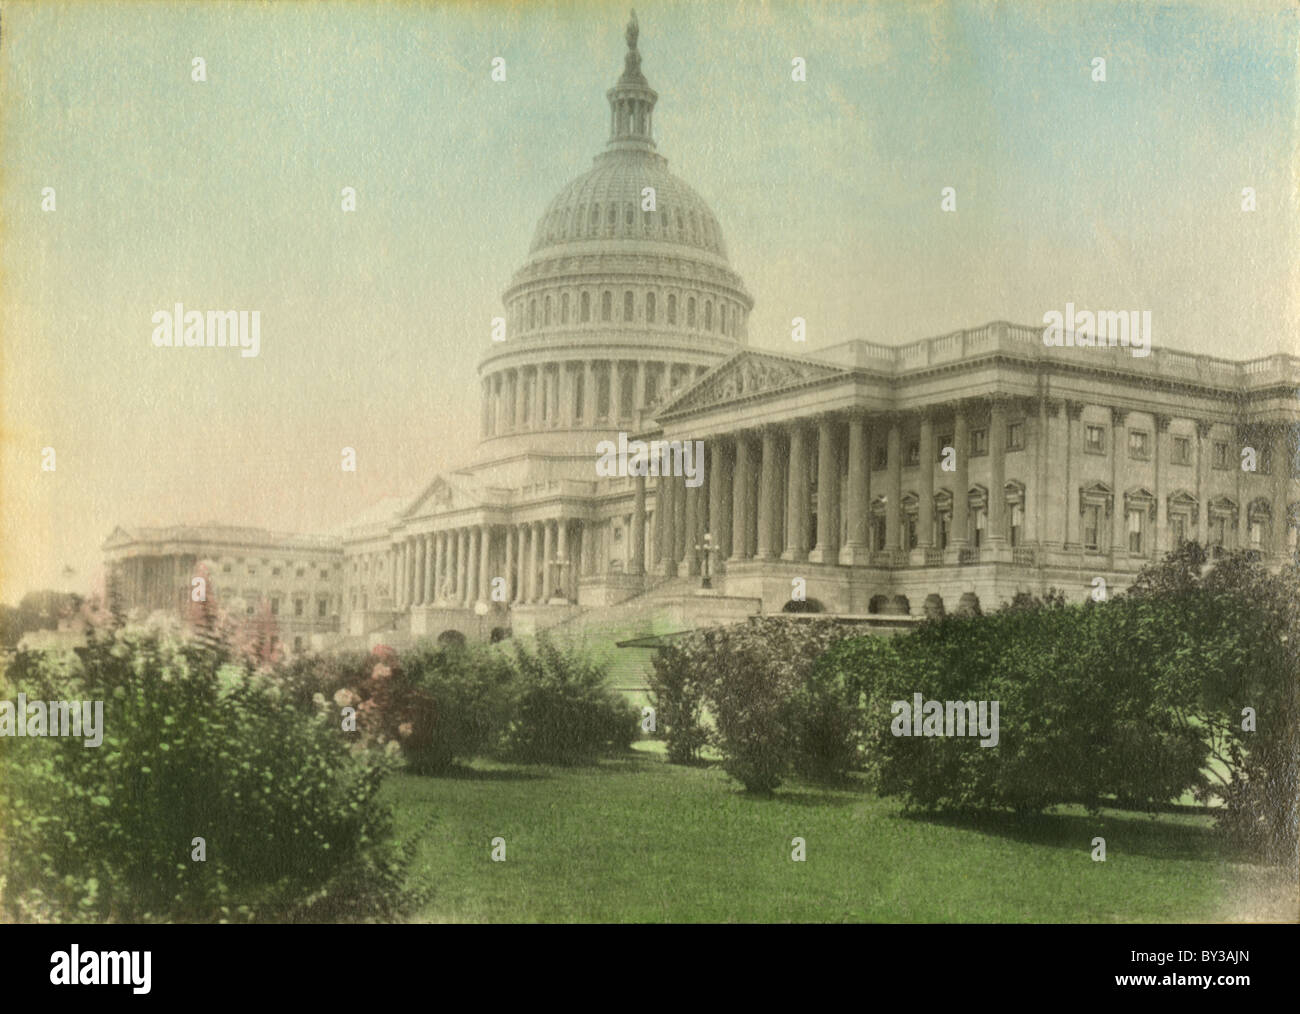 Circa 1910s antiguas fotografía de tintado a mano el edificio del Capitolio de los Estados Unidos, Washington, DC. Foto de stock